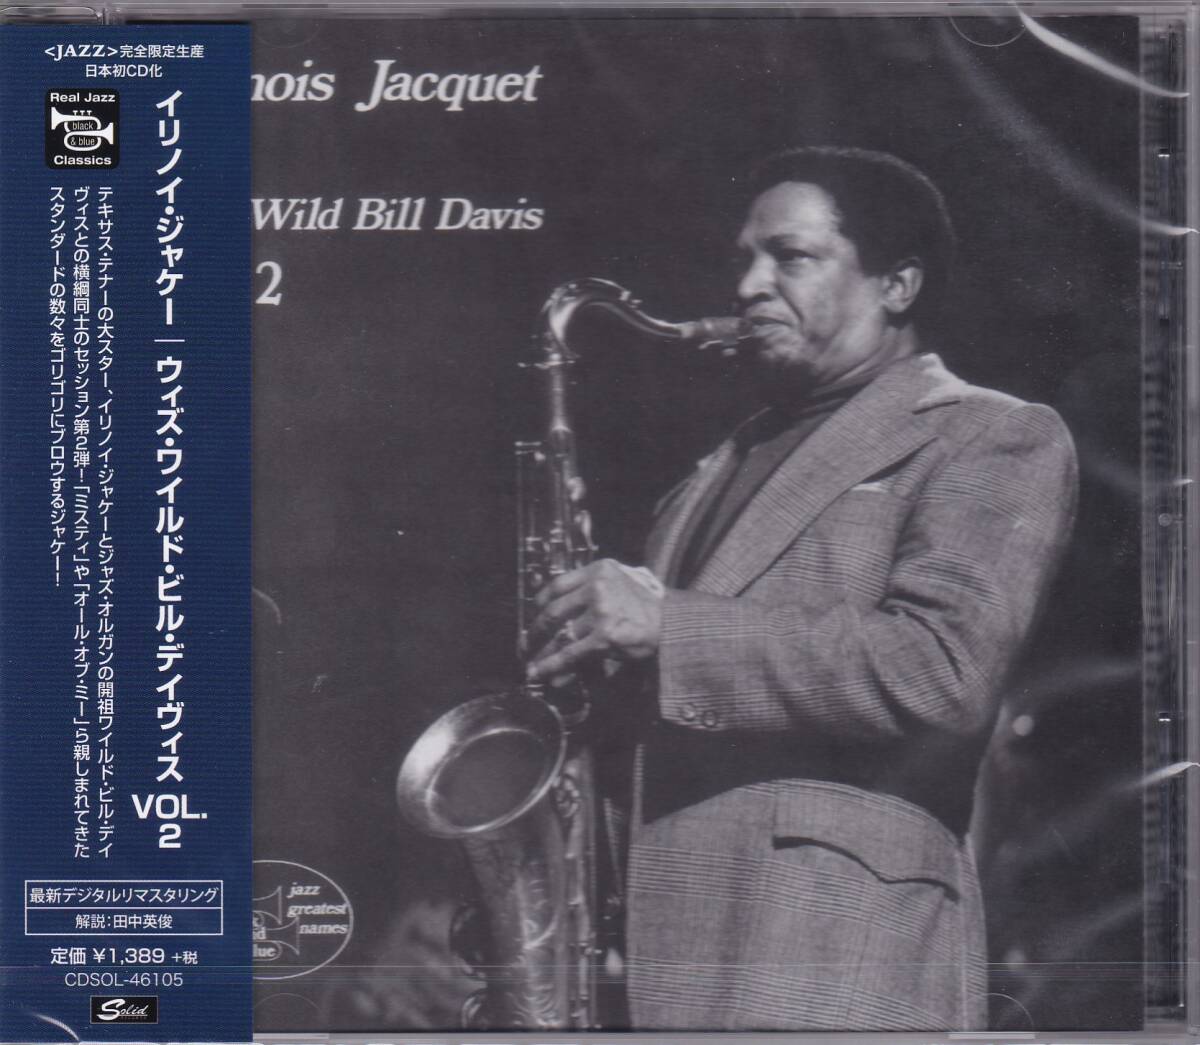 ジャズ/Soul Jazz■Illinois Jacquet / with Wild Bill Davis Vol.2 (1973) 廃盤 初CD化!! 2020年最新デジタル・リマスタリング仕様 Organの画像1